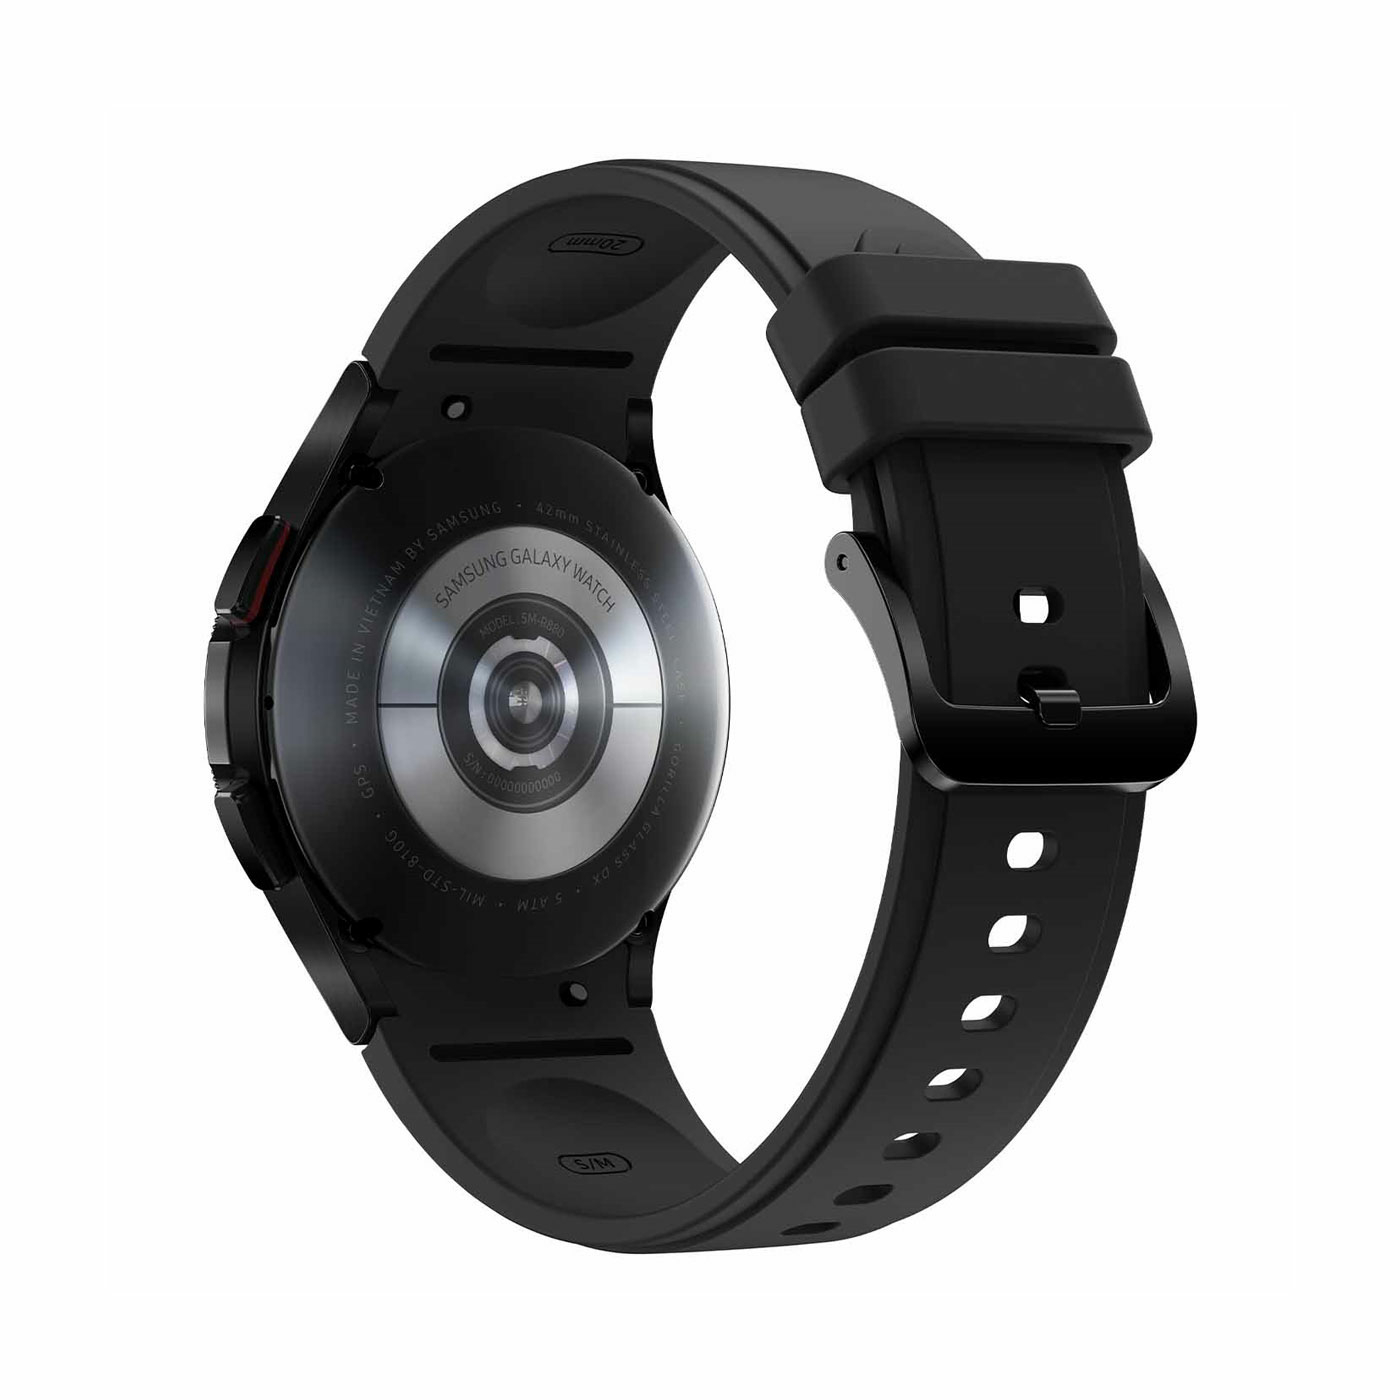 Reloj SAMSUNG Galaxy Watch 4 Classic de 42 mm Negro + Cargador Dual Inalámbrico 15W